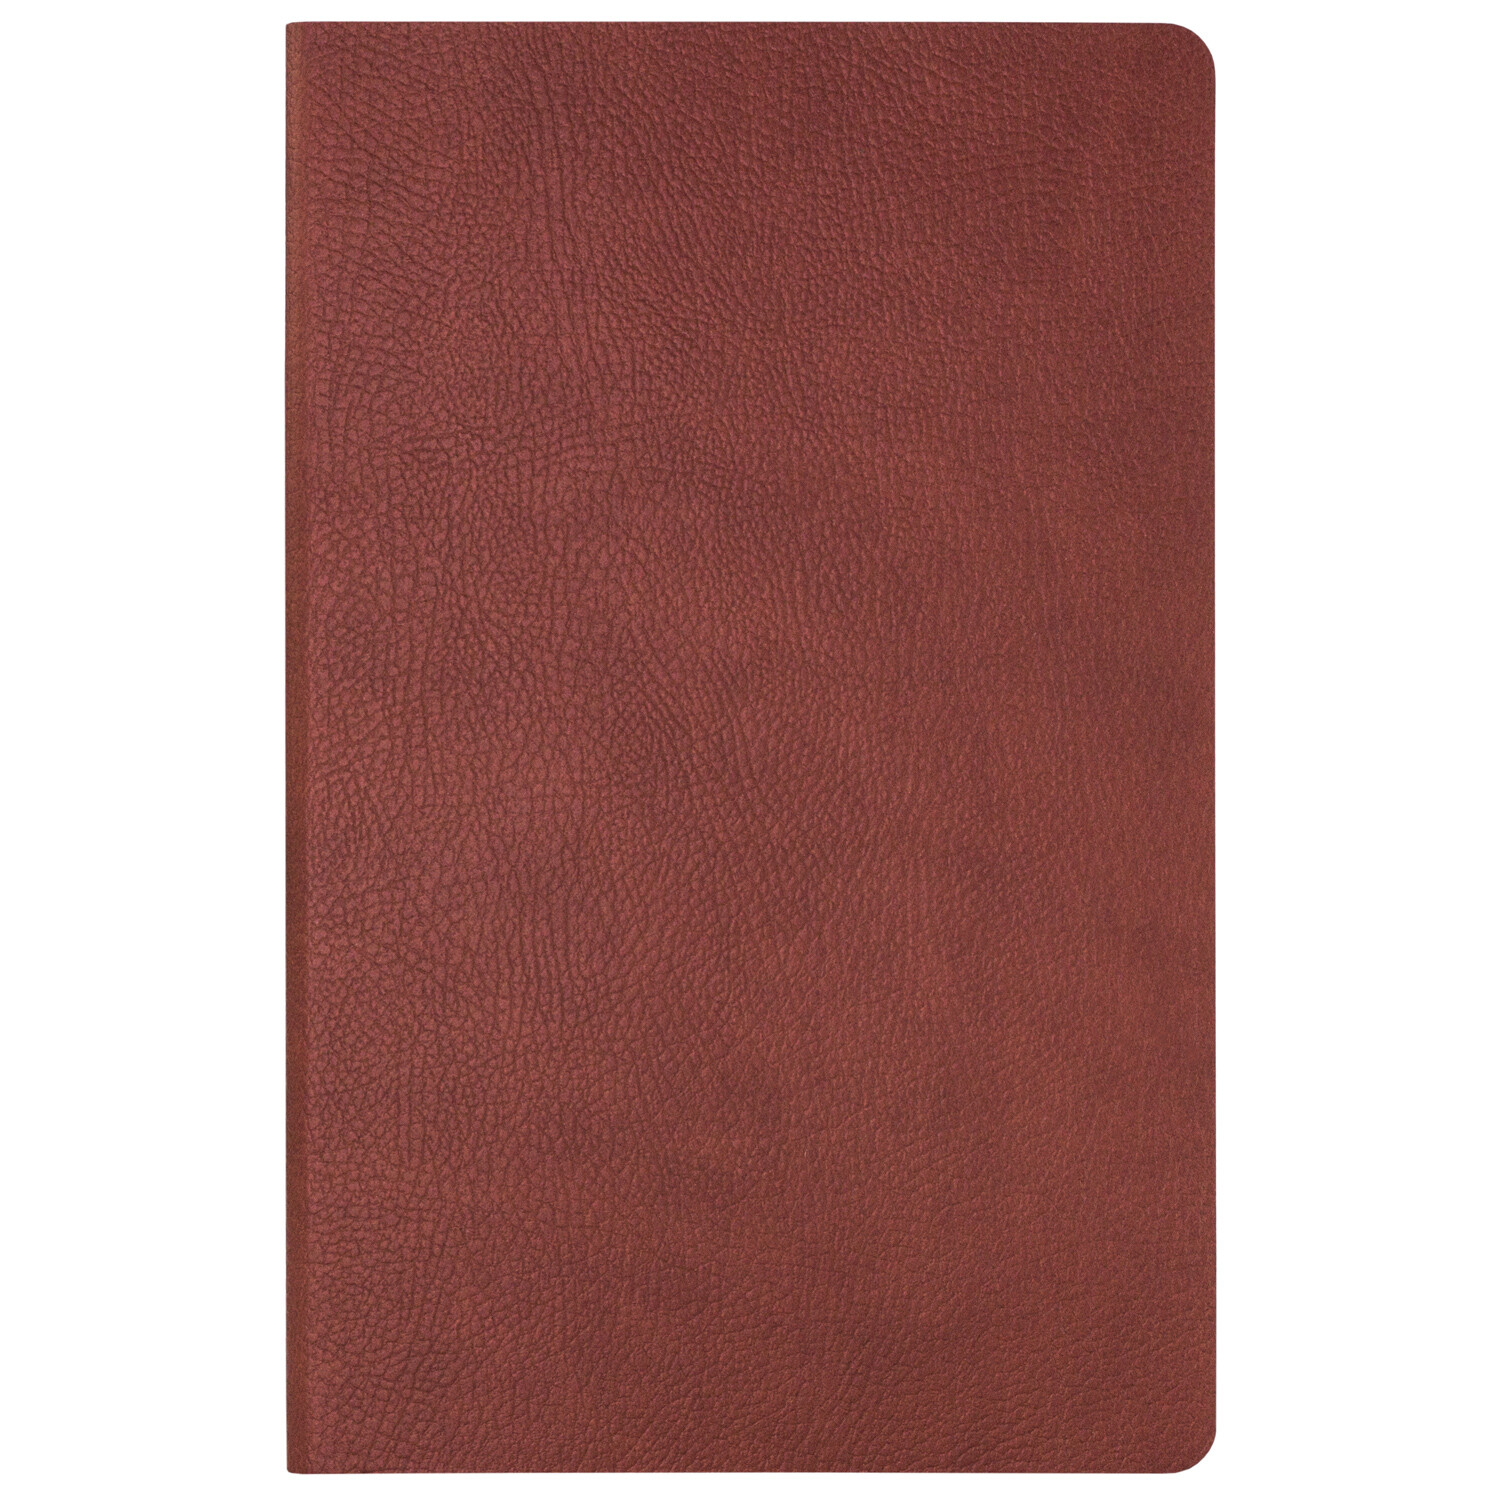 Ежедневник Marseille недатированный без печати, коричневый (Sketchbook)